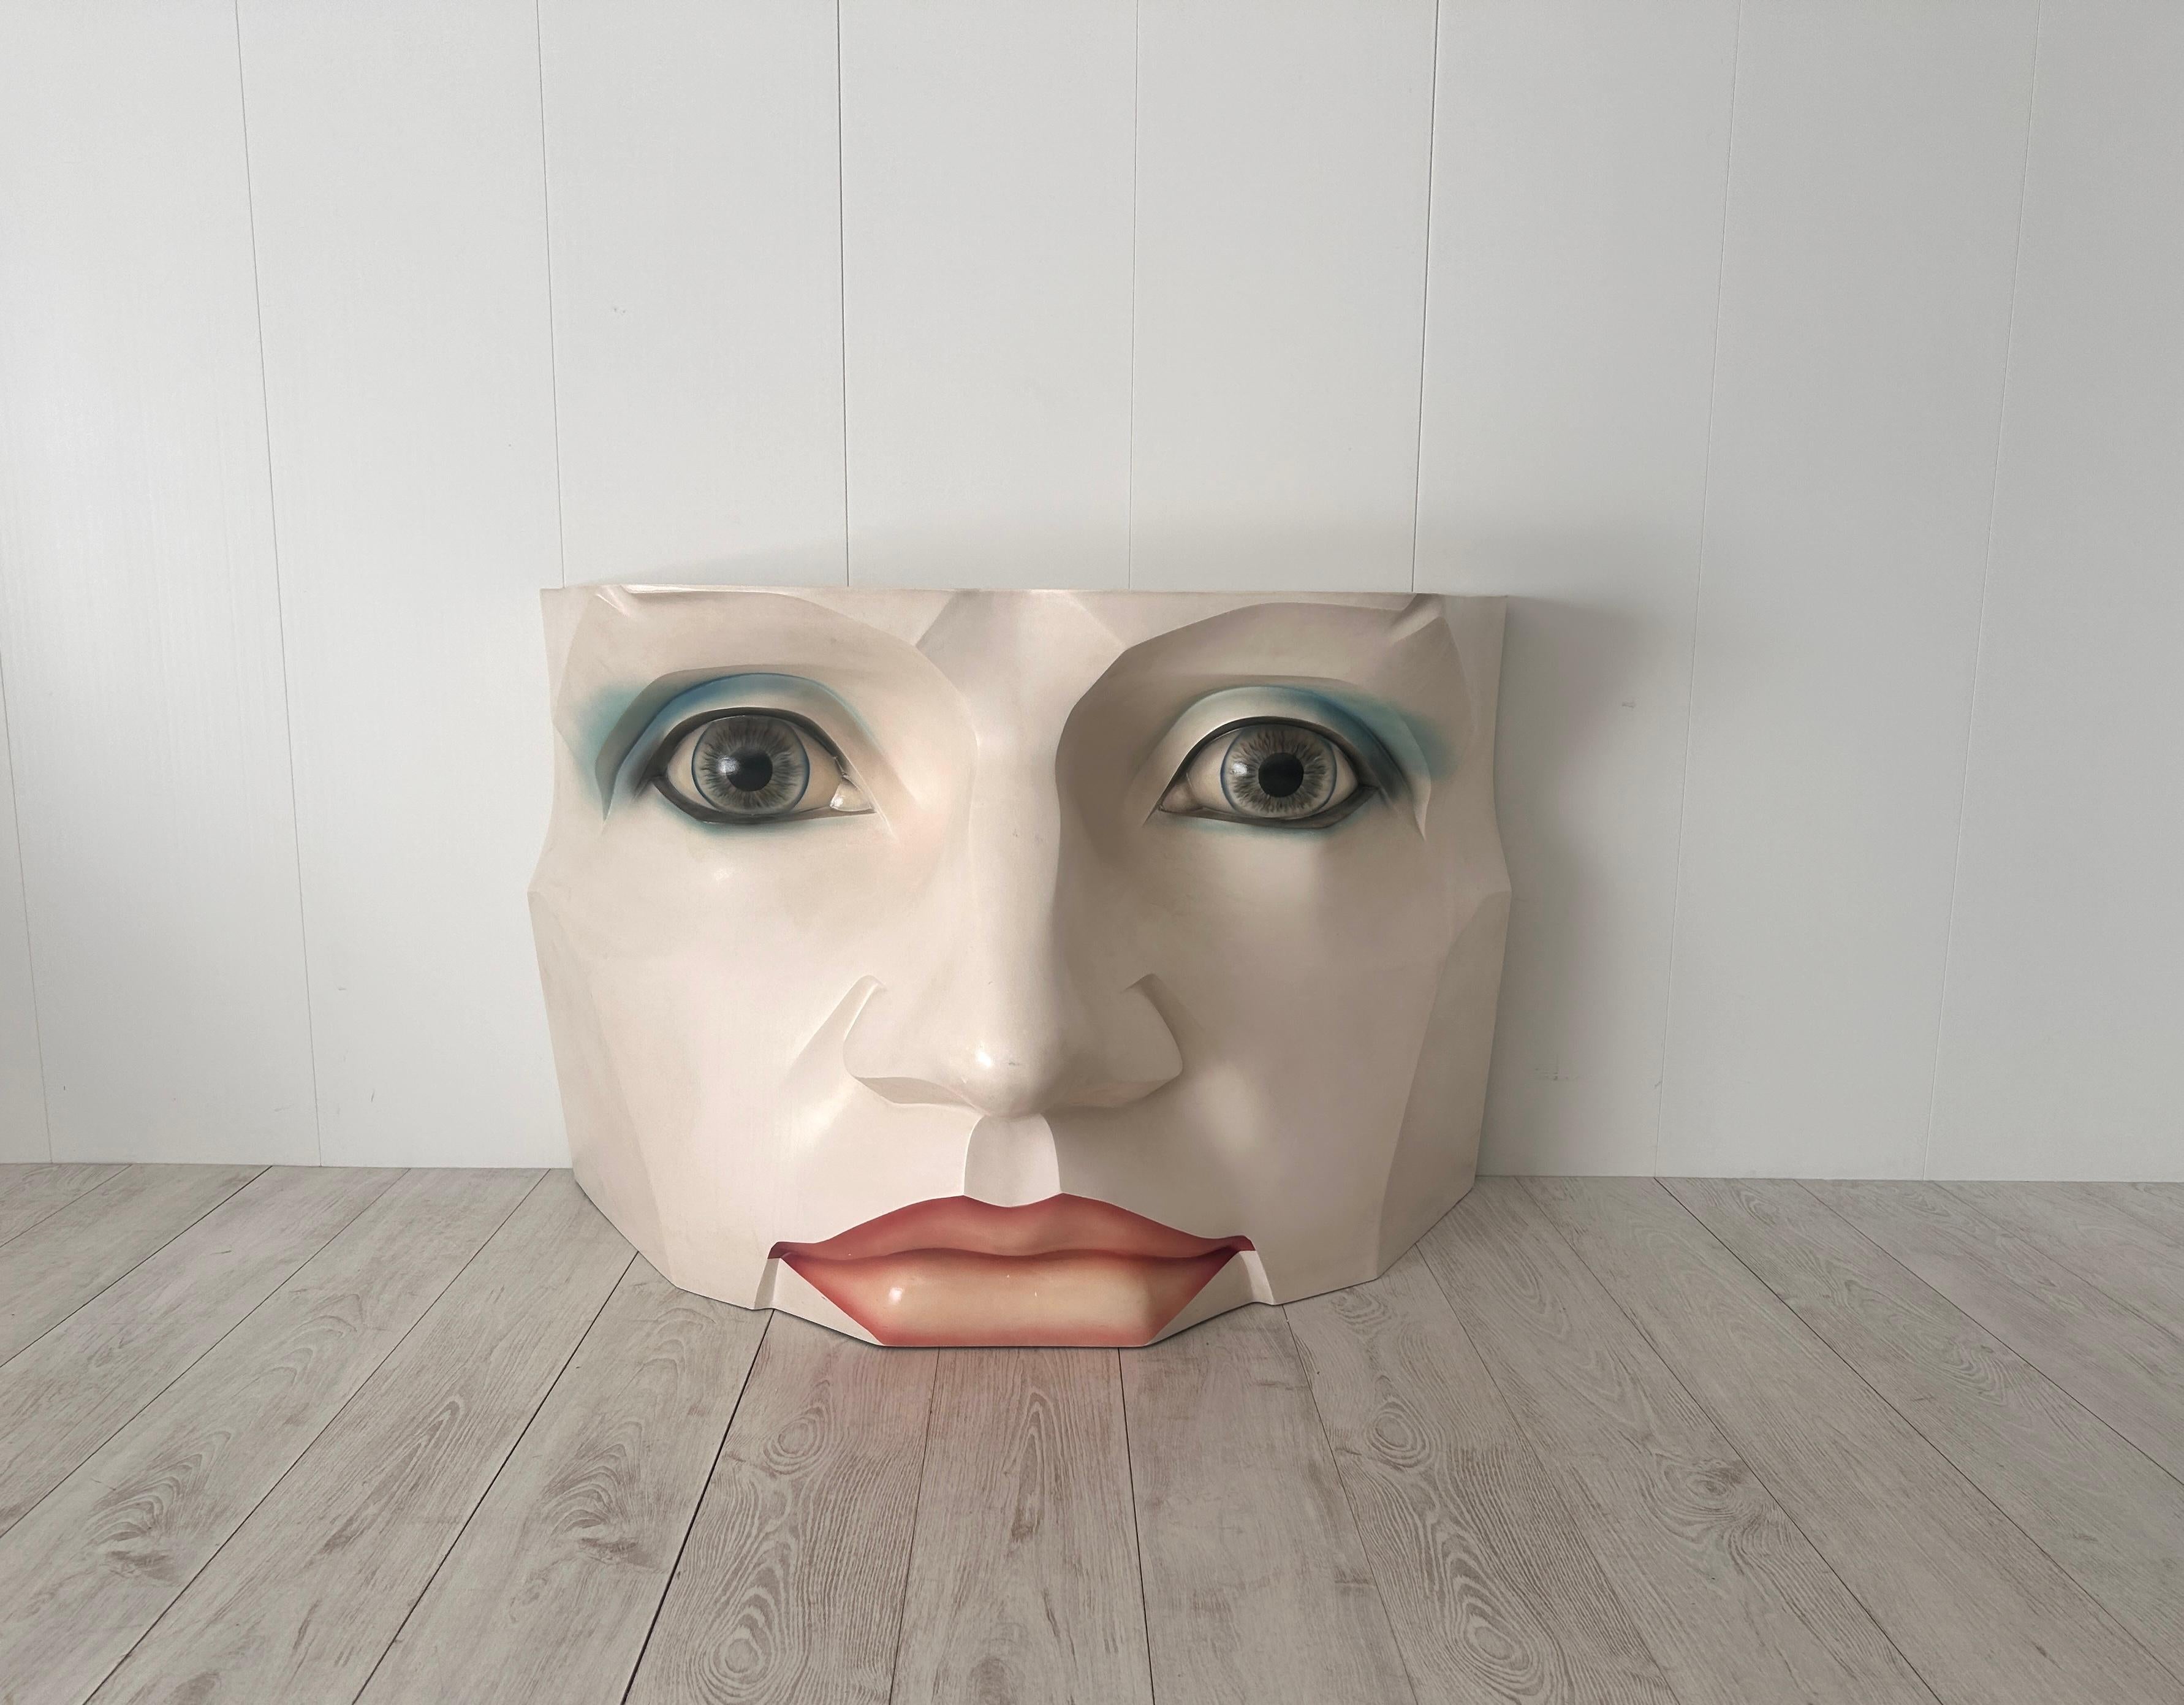 Particolare consolle - scultura a forma di viso di donna. 
Struttura in vetro resina, piano d'appoggio in vetro.

Anni '80, in ottimo stato di conservazione. Colori originali.